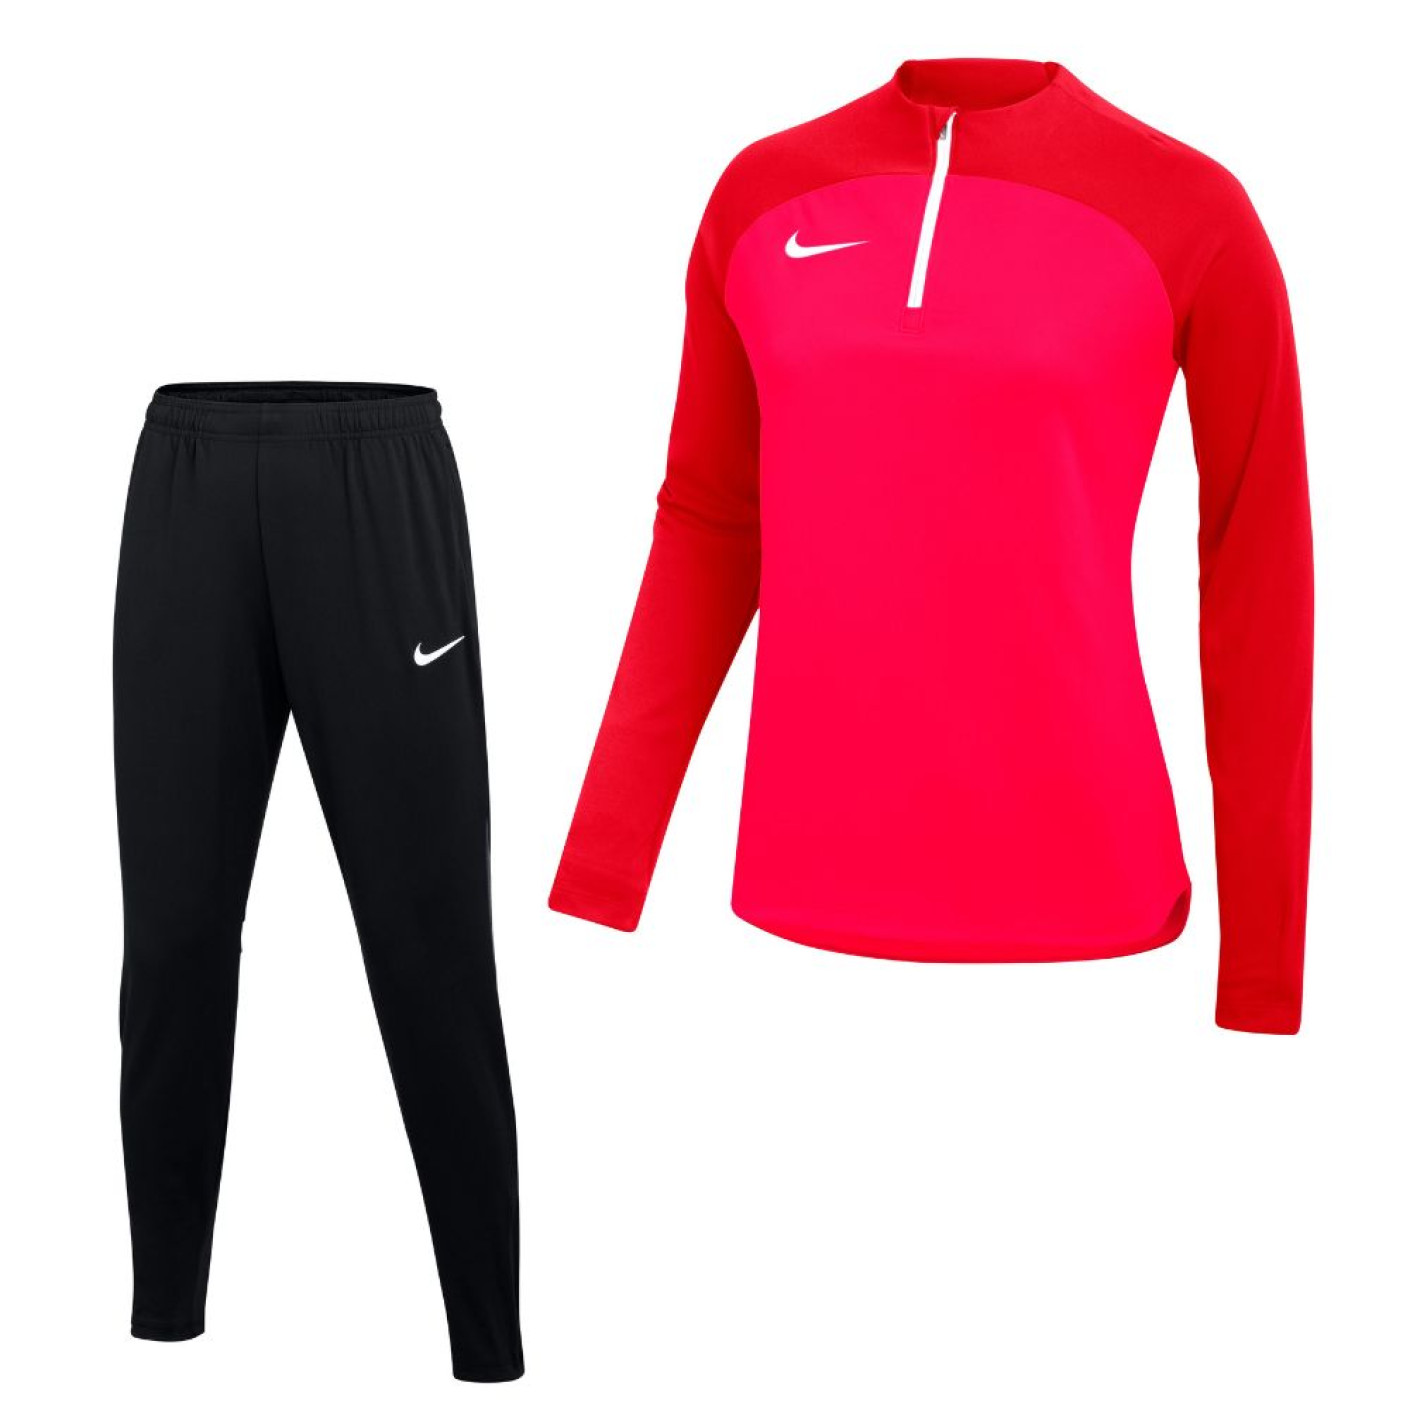 Survêtement Nike Academy Pro pour femme rouge foncé noir